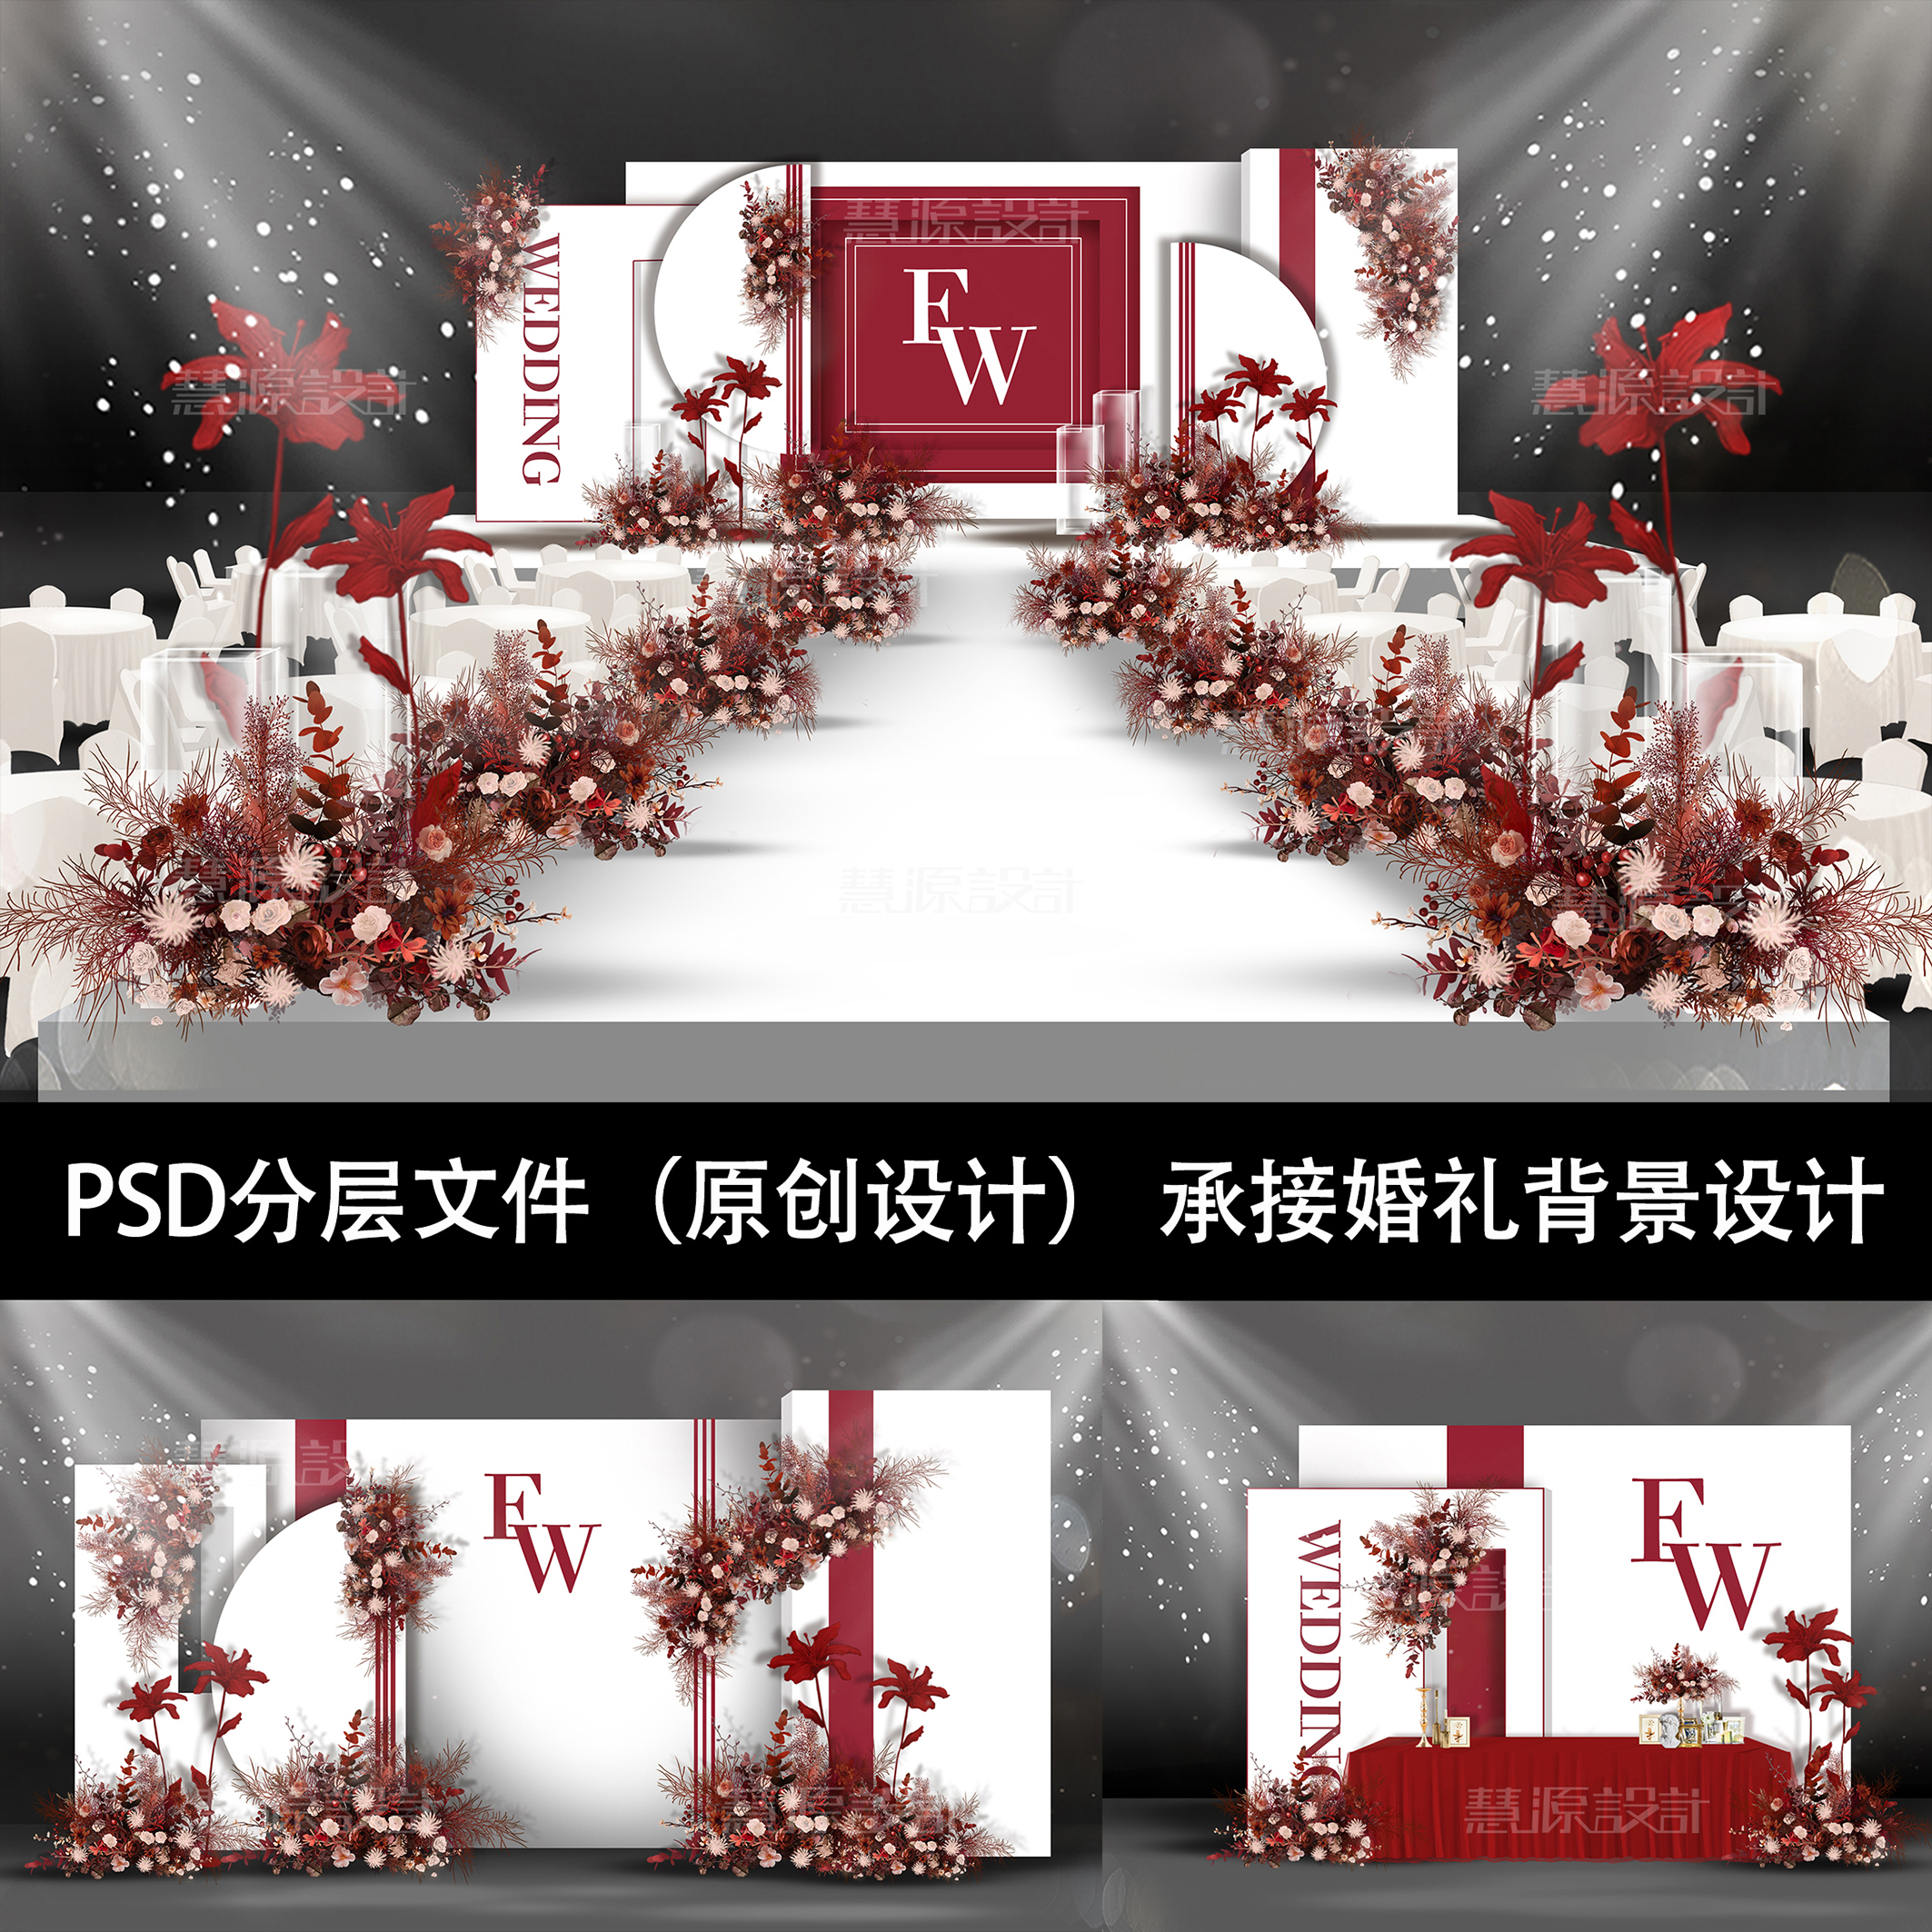 红白色简约泰式小清新手绘婚礼舞台迎宾效果图PSD源文件素材